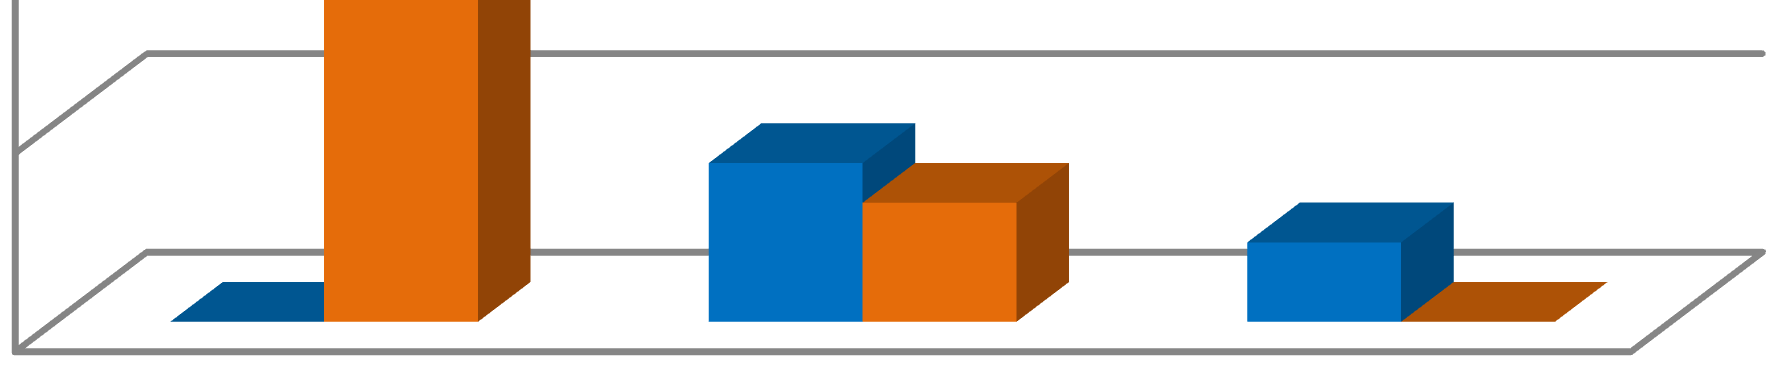 Většina respondentů odebírá zboží od Velkoobchodu Brát po celý rok, jen pět respondentů pouze v době zahrádkářské sezóny (viz graf 5).